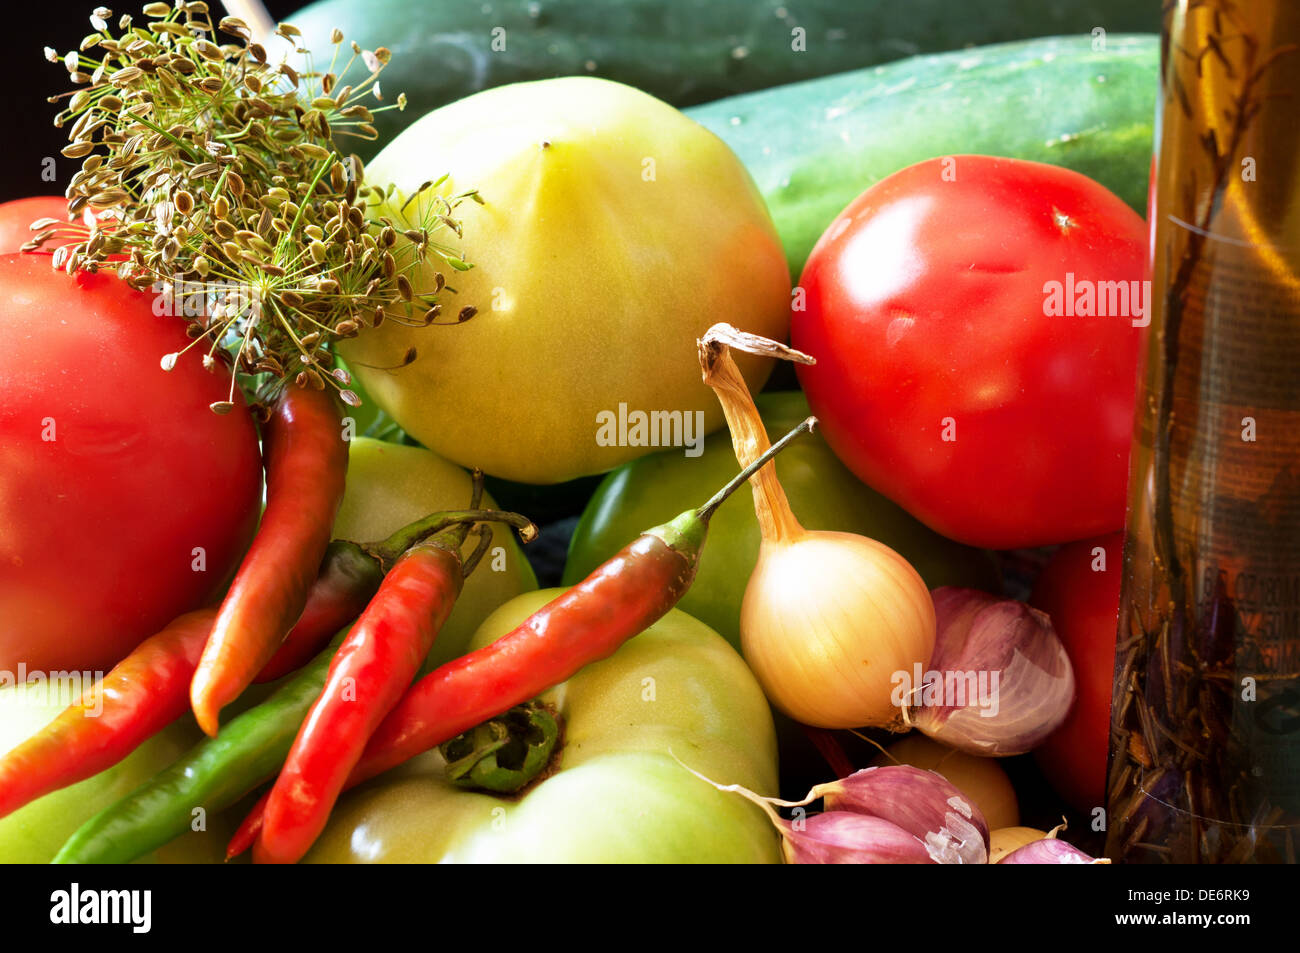 Zutaten für eingelegtes Gemüse wie Tomaten (rot und grün) Gurken, Peperoni, Zwiebeln (rot und weiß), Knoblauch und dill Stockfoto